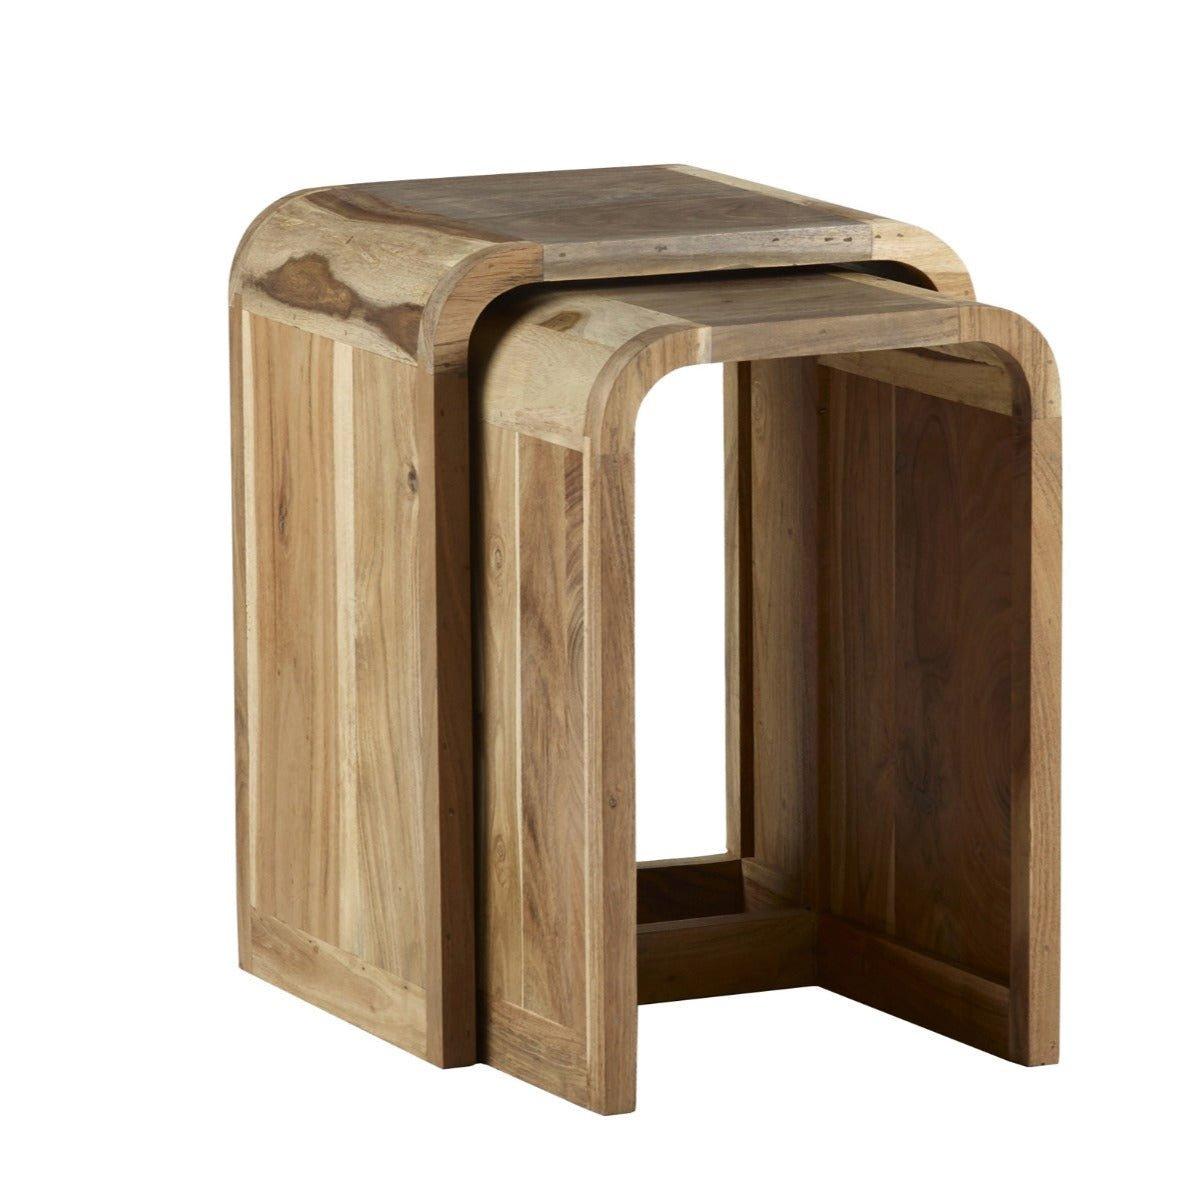 Daizha Nest of 2 Wooden Tables